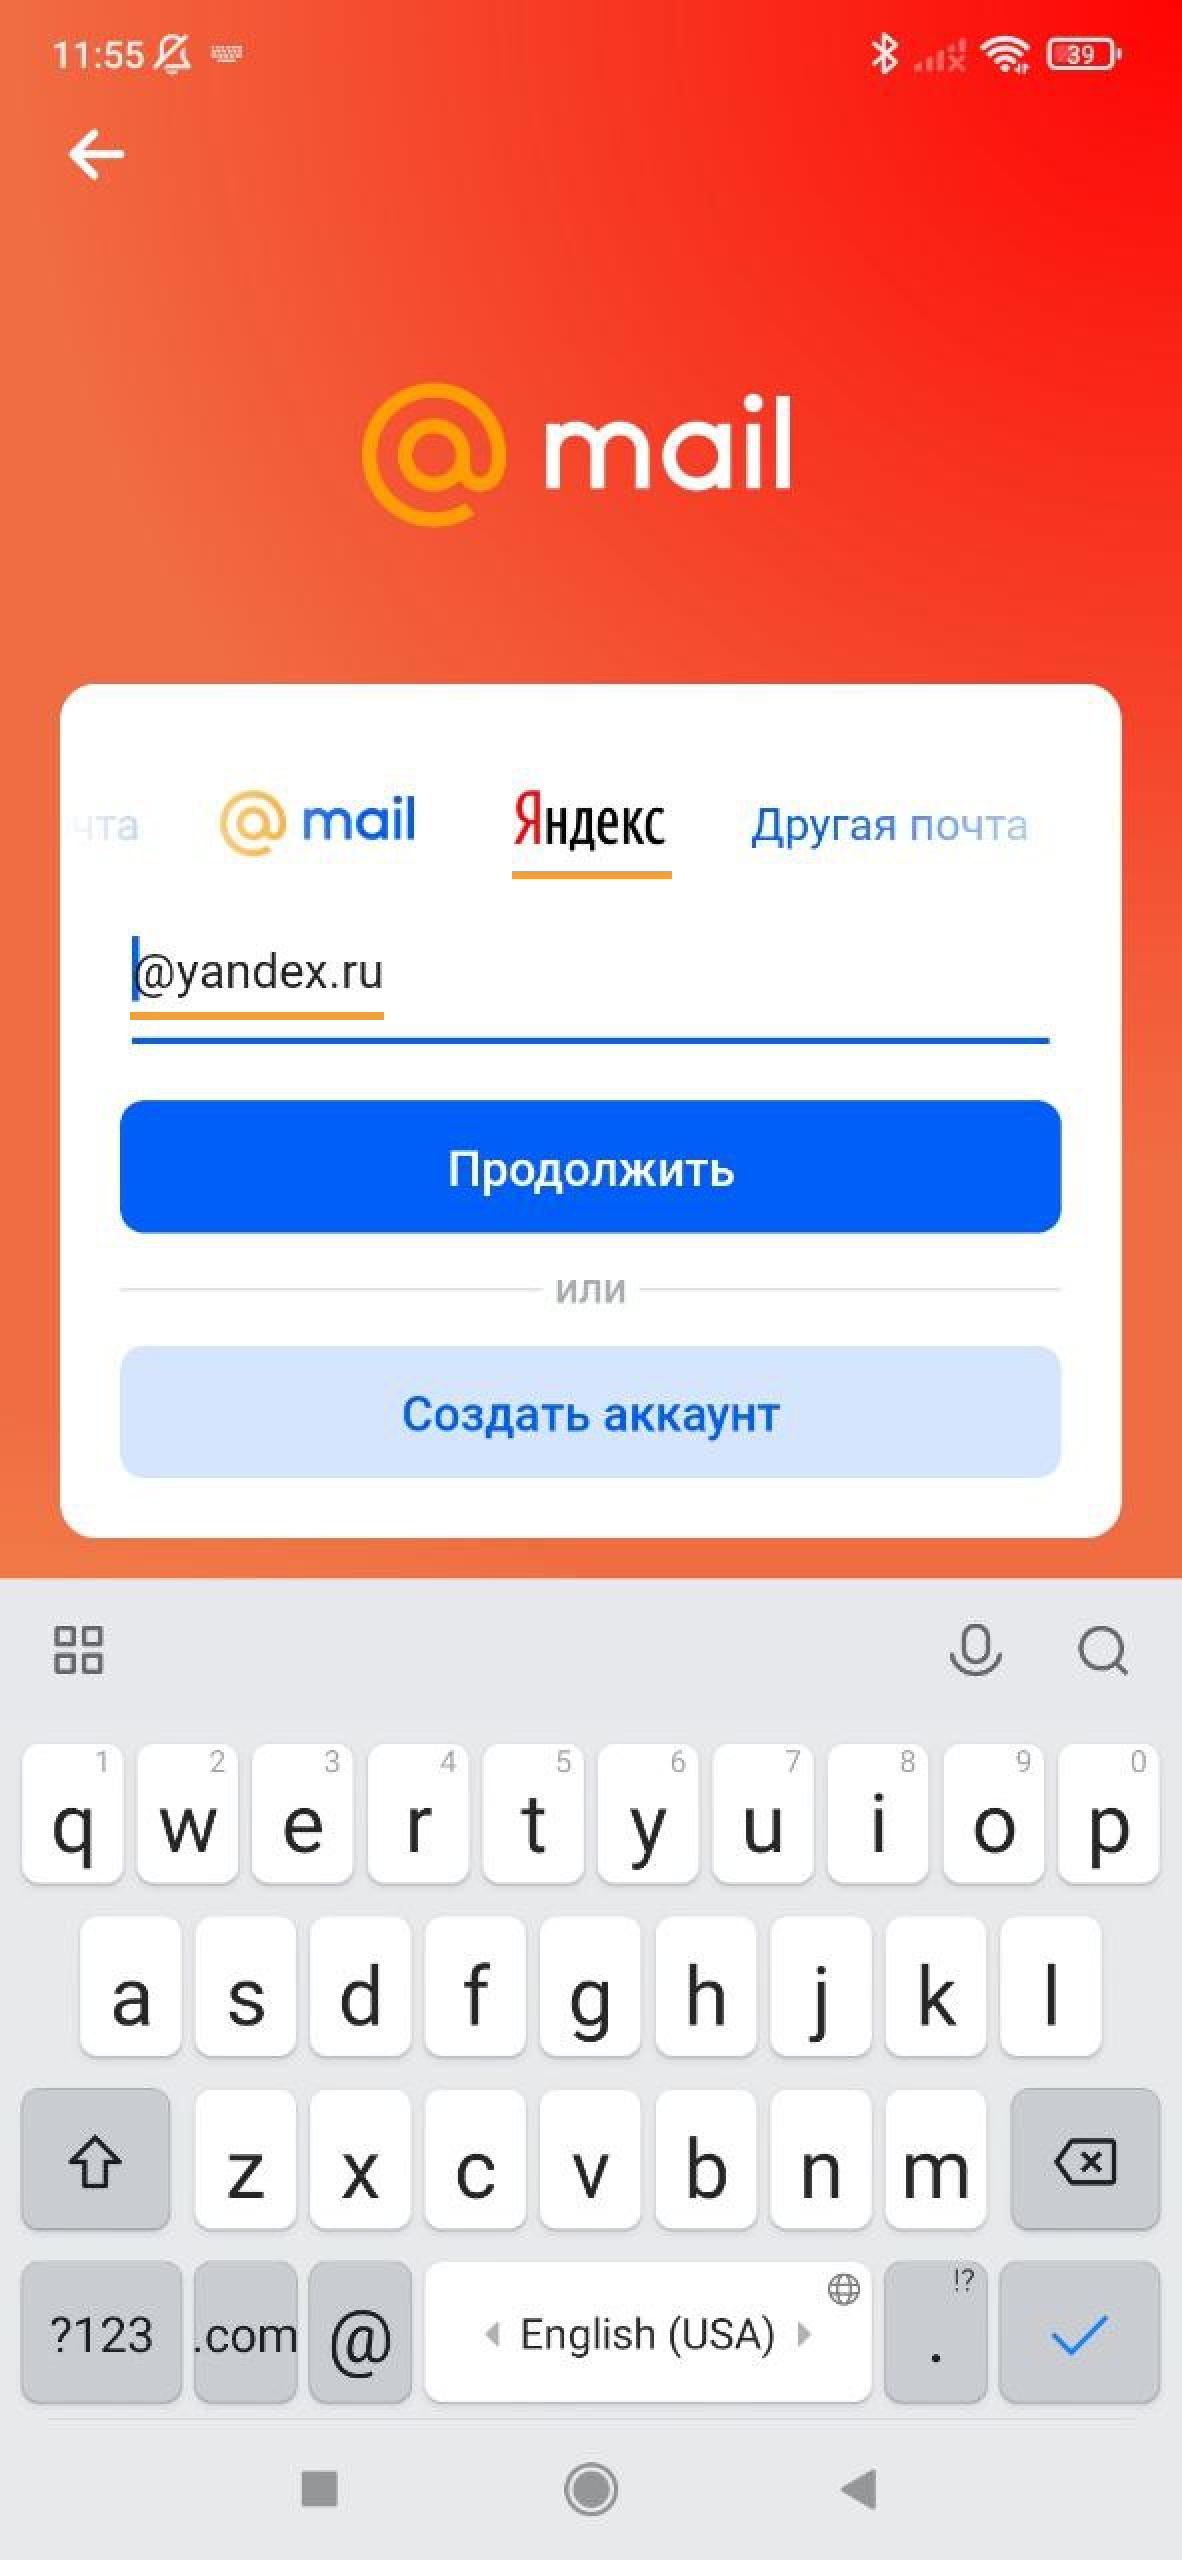 Пример экрана входа в ящик «Яндекса» через приложение Почты на Android